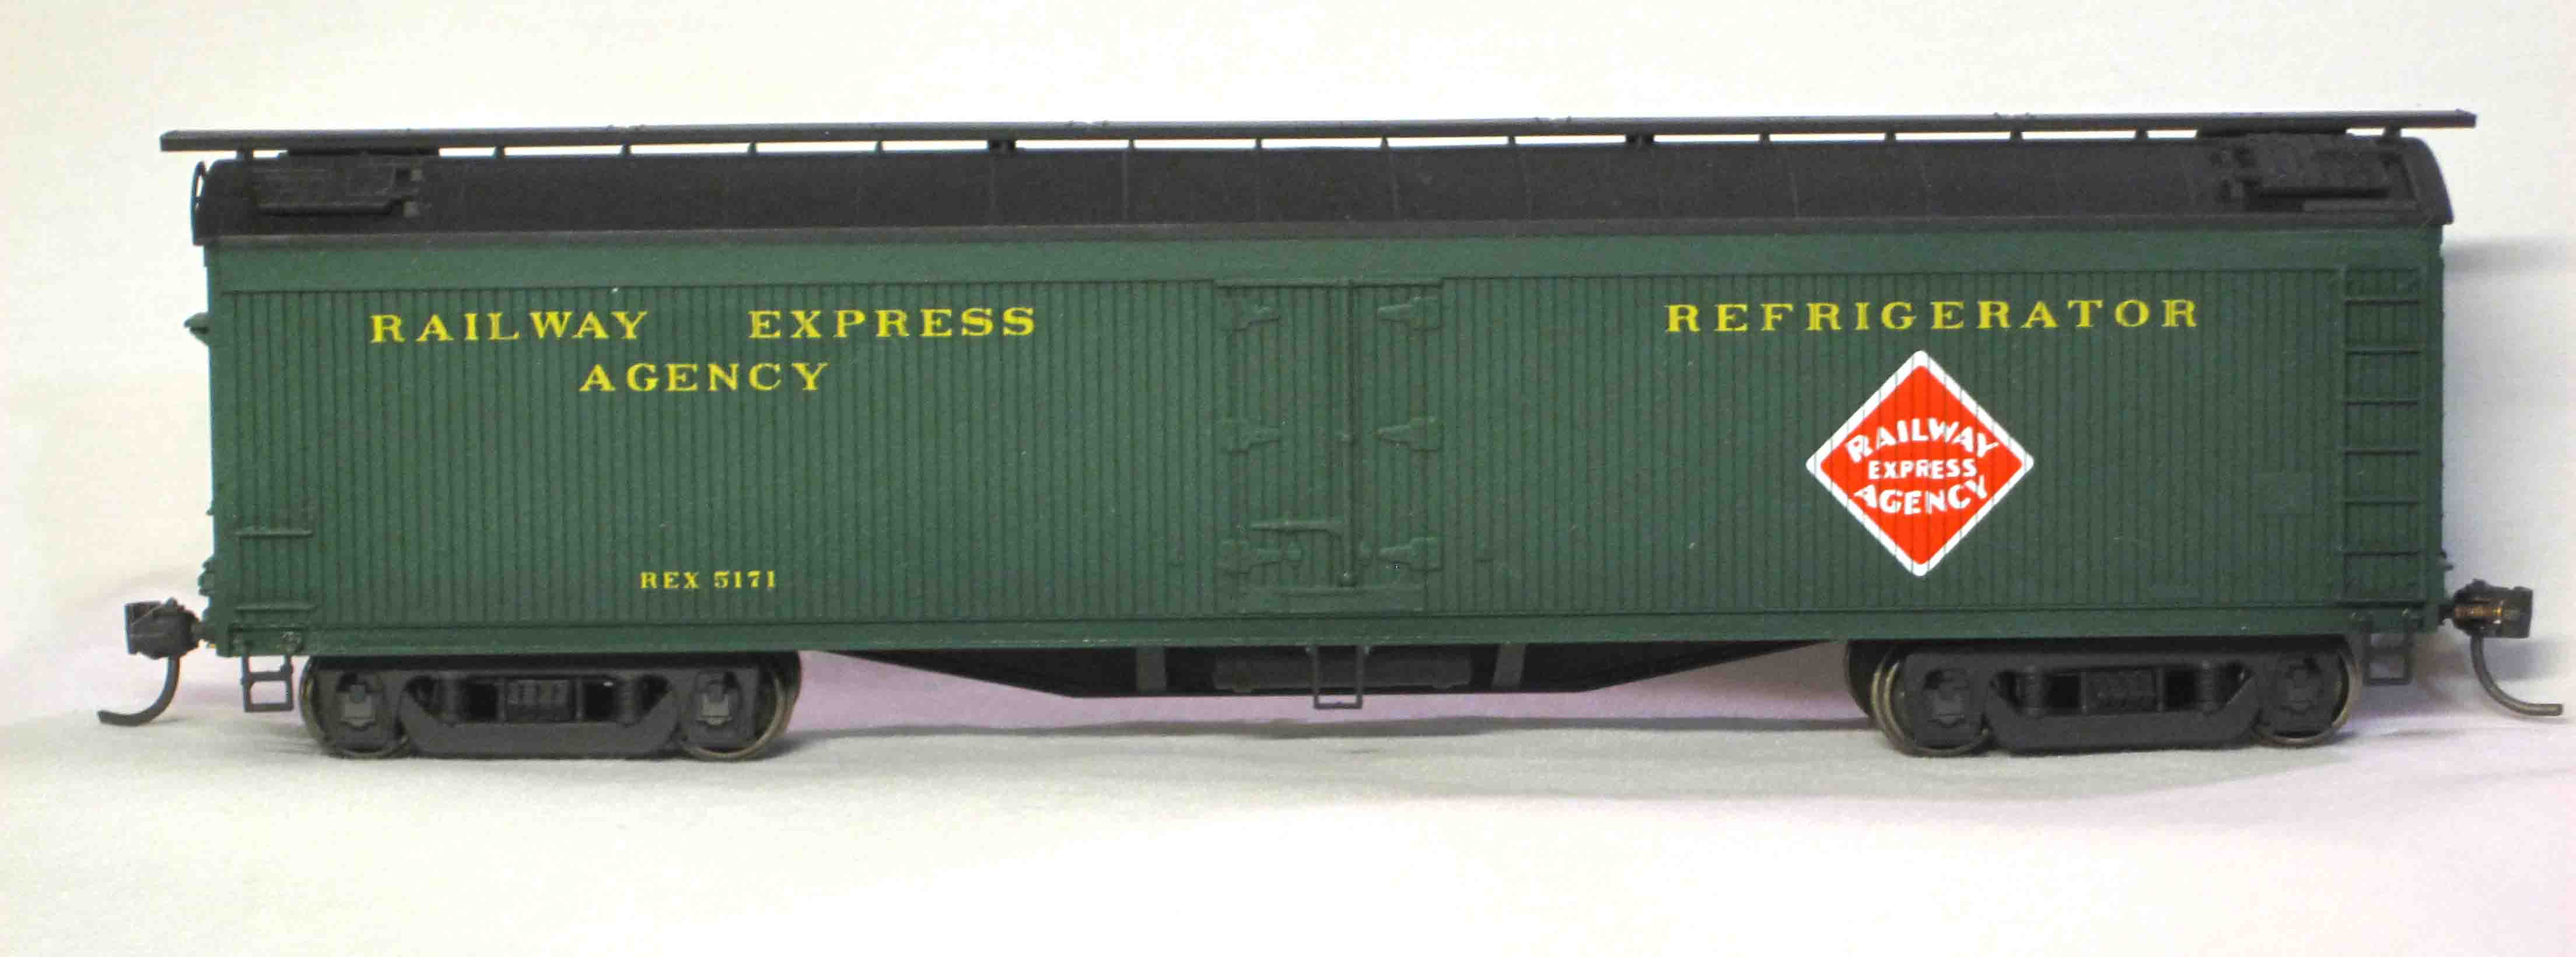 REA Express Refrigerator #5171